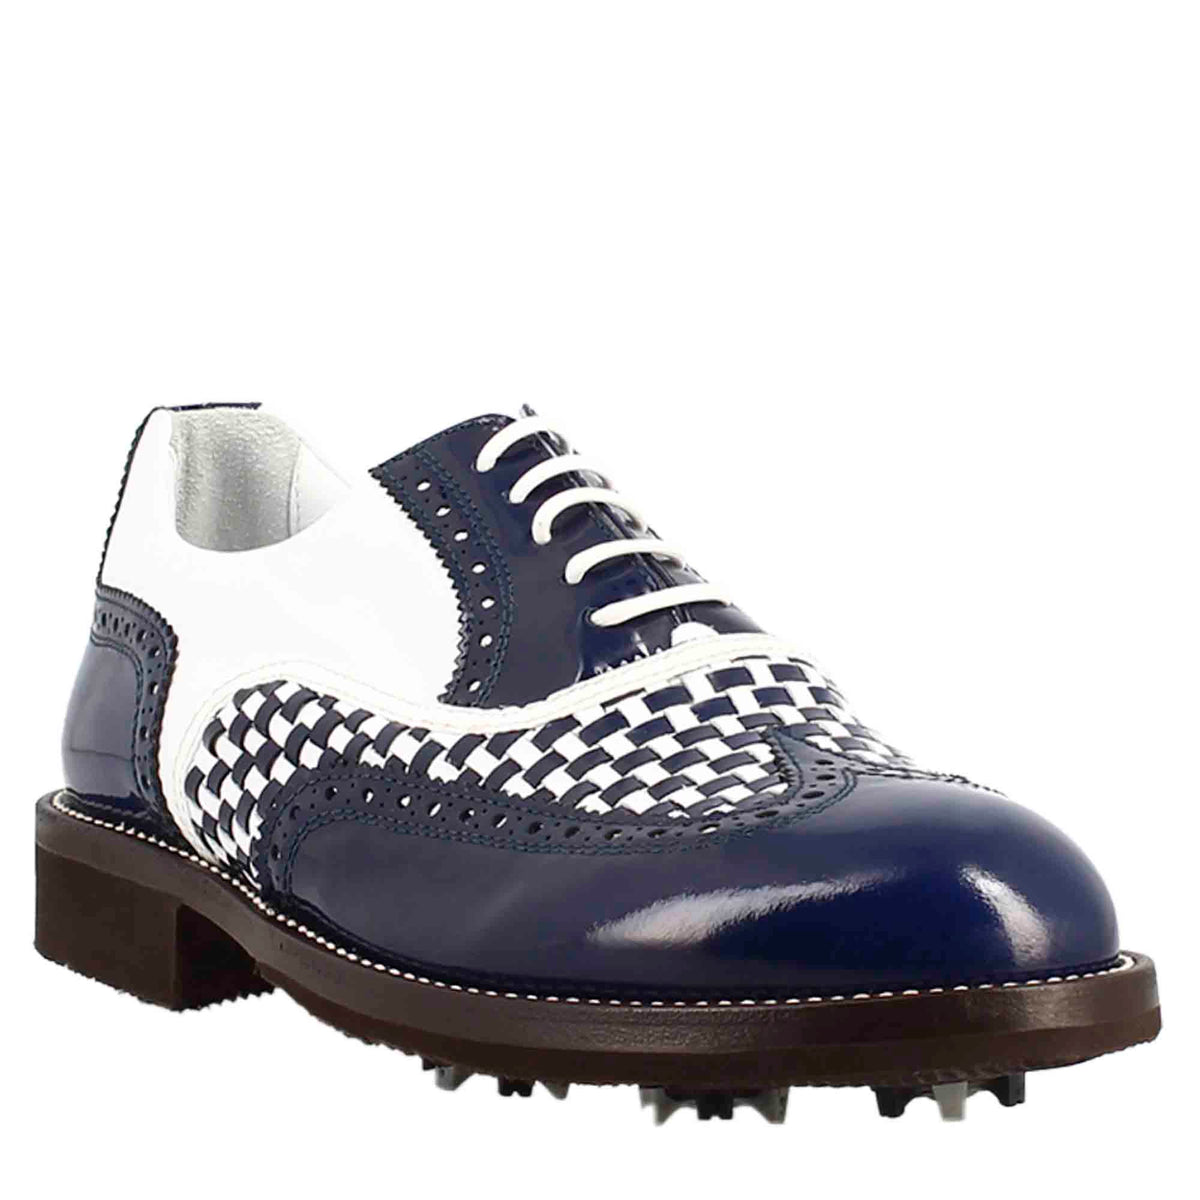 Herren Golfschuhe aus Leder in blau-weißer Brogue-Optik handgefertigt